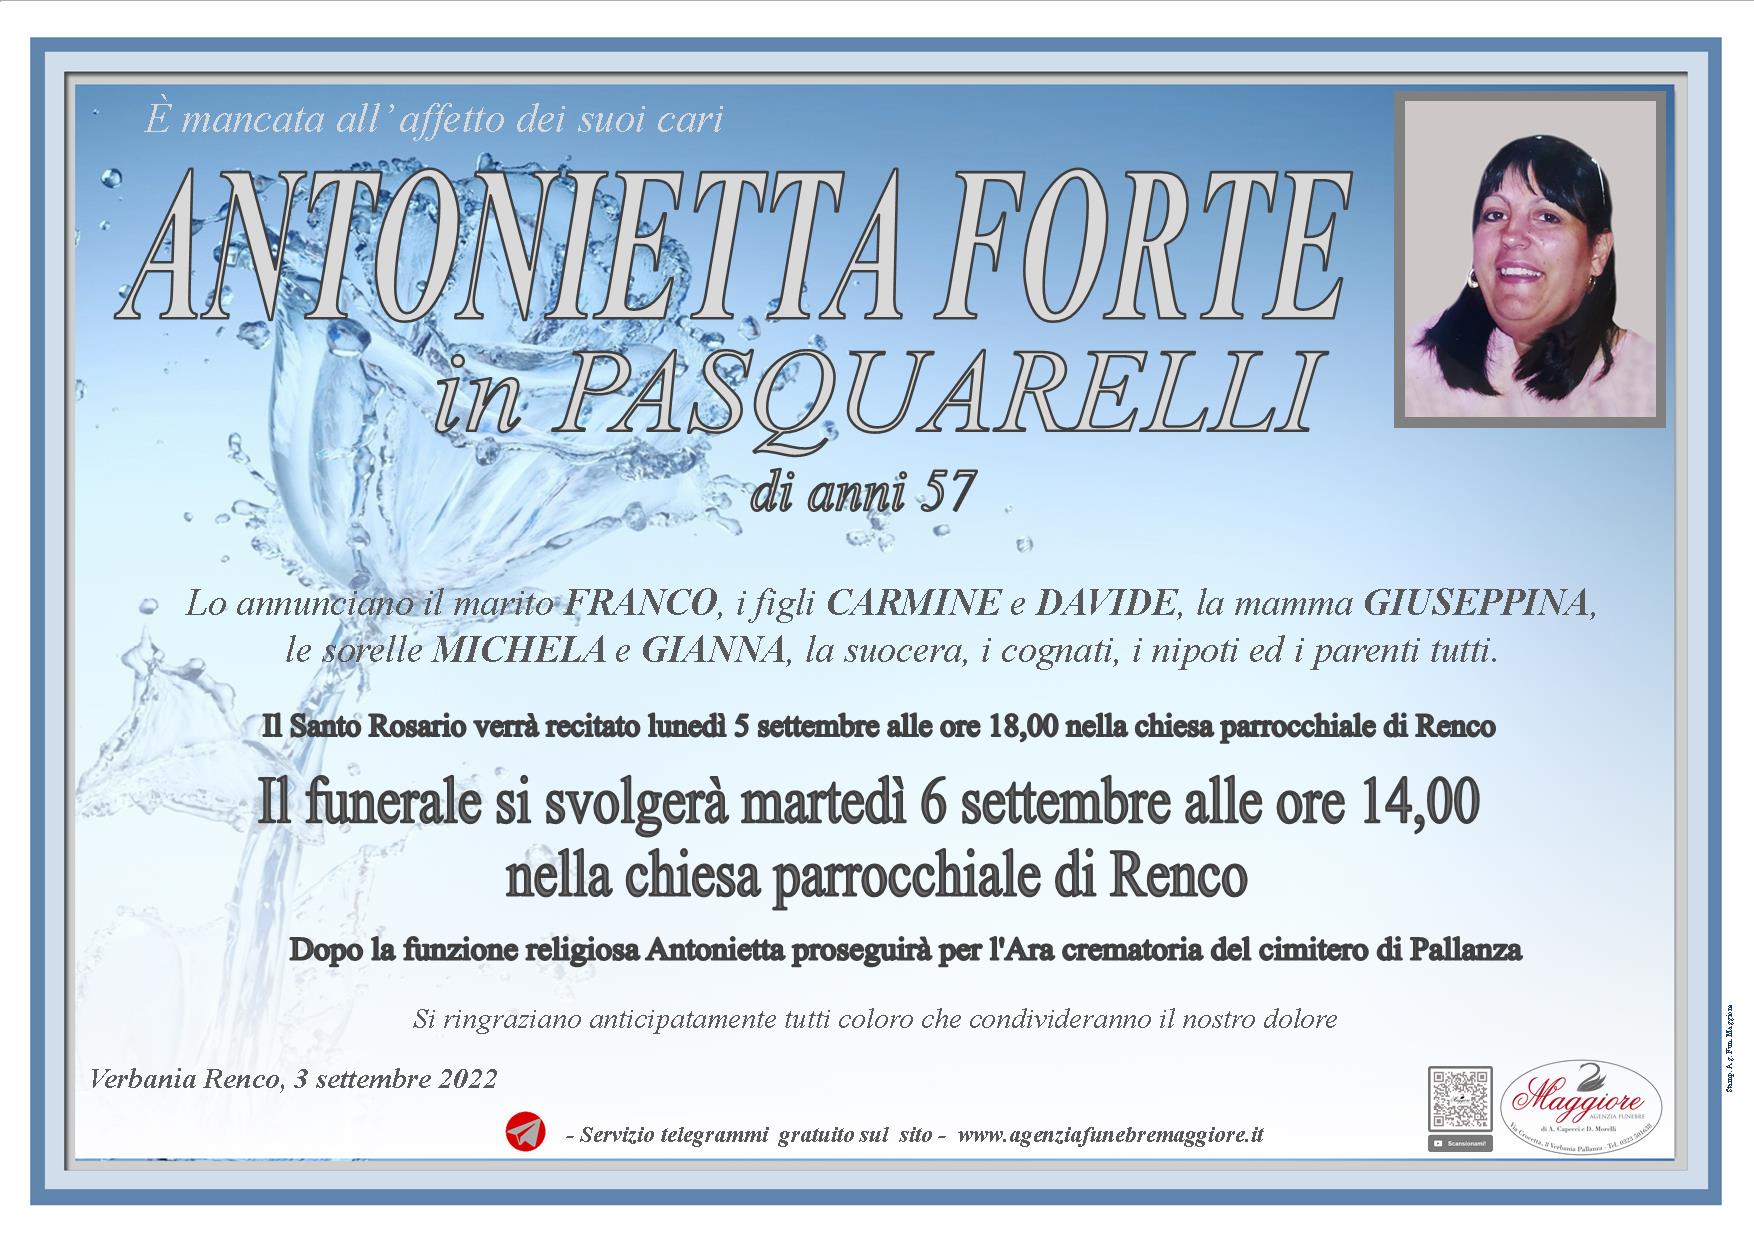 Antonietta Forte ved. In Pasquarelli